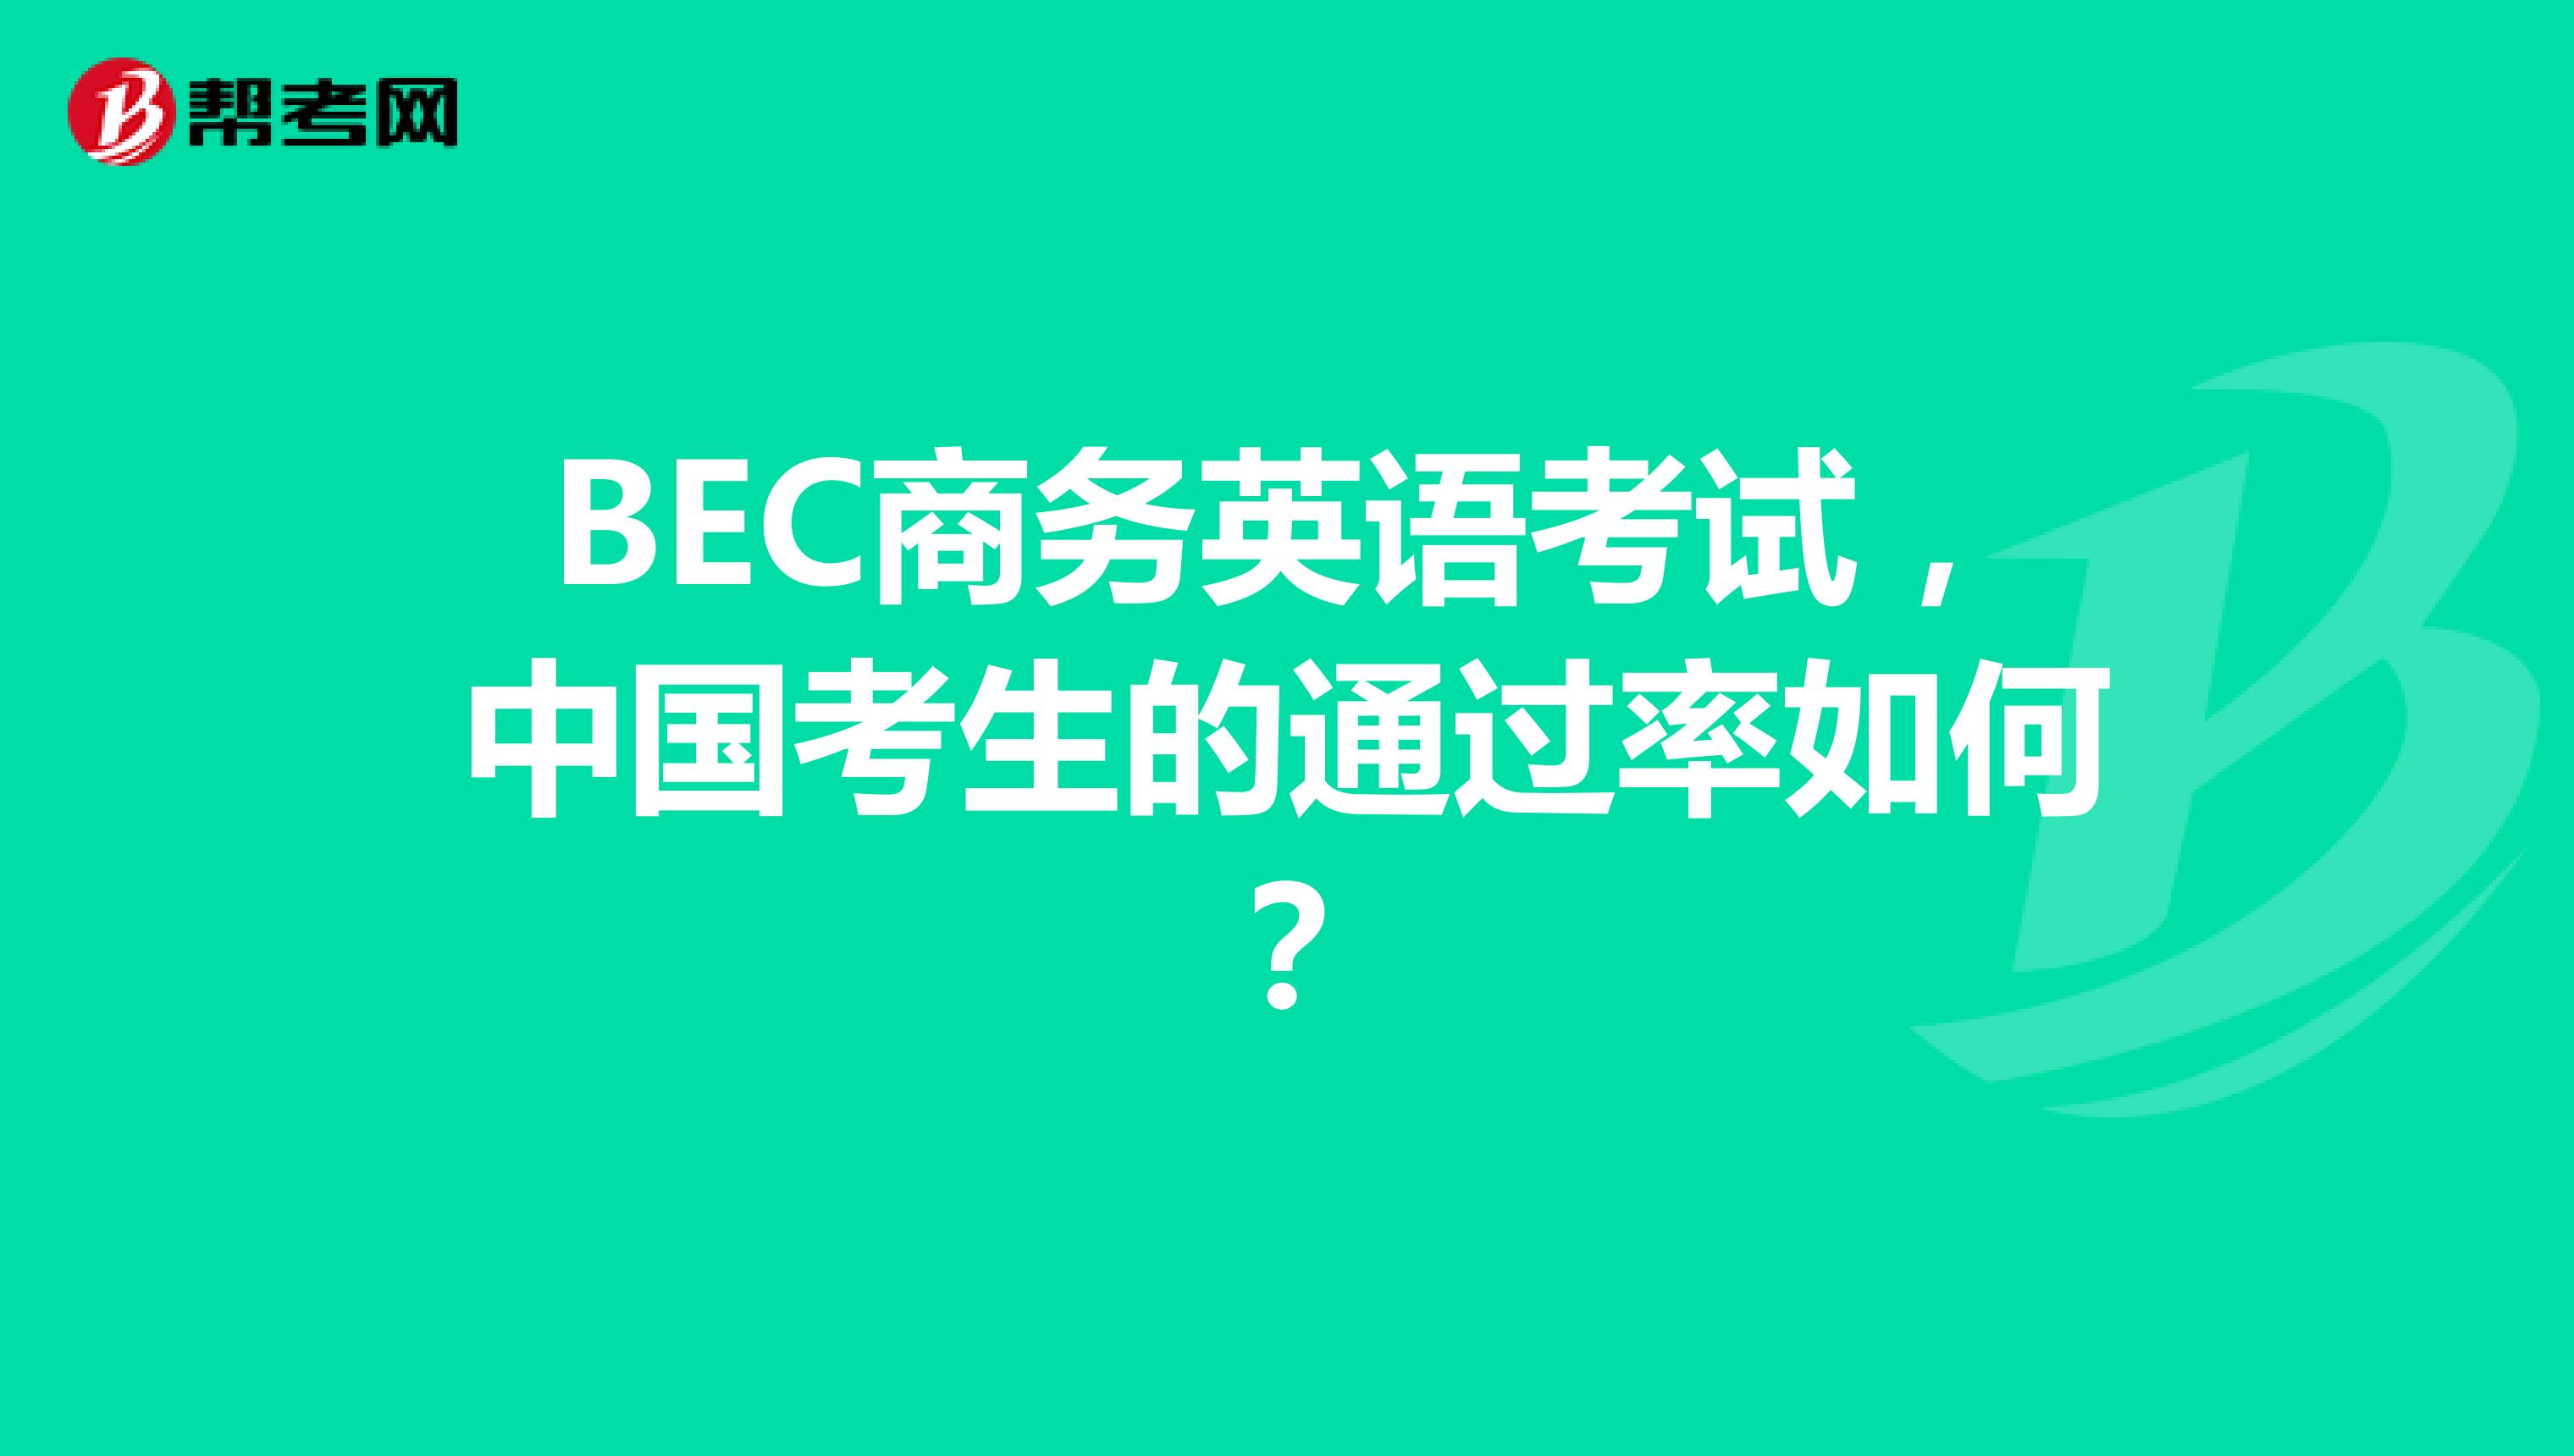 BEC商务英语考试，中国考生的通过率如何？